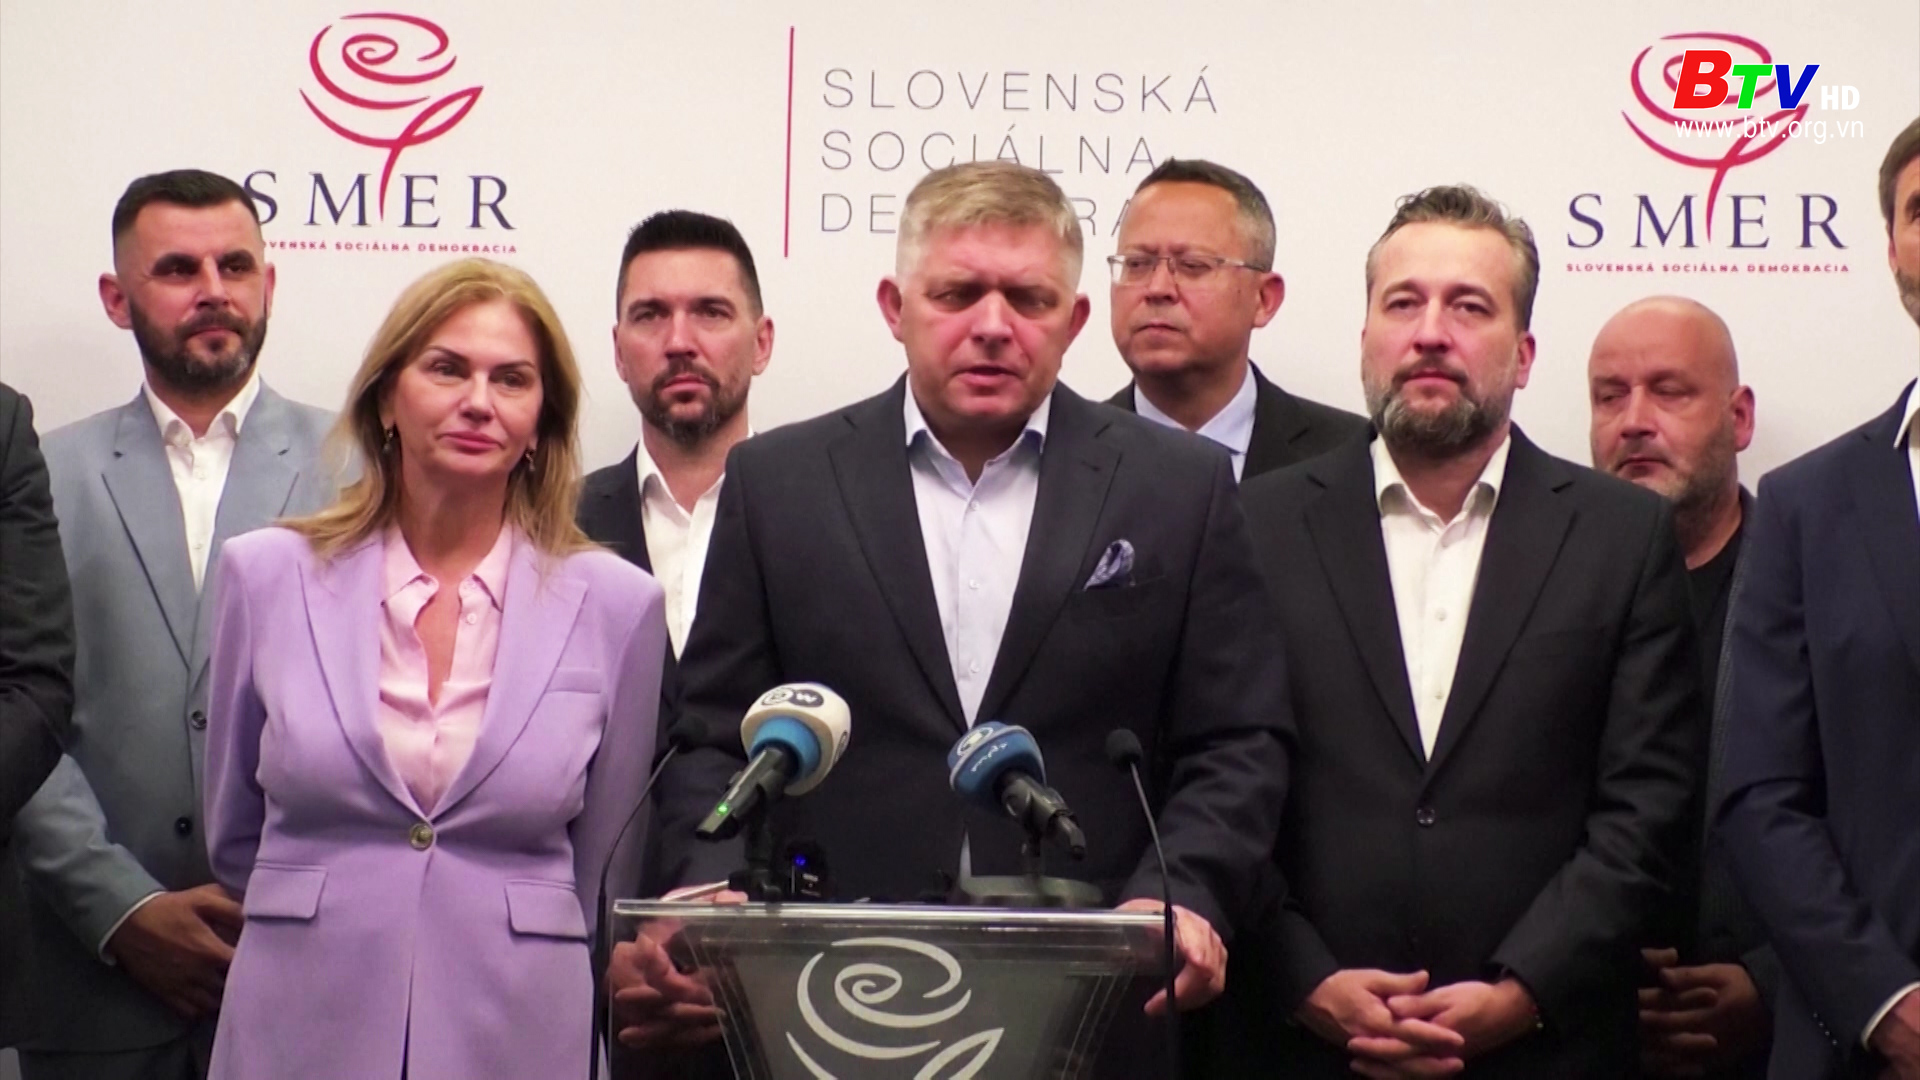 Slovakia: Cựu Thủ Tướng Fico giành chiến thắng